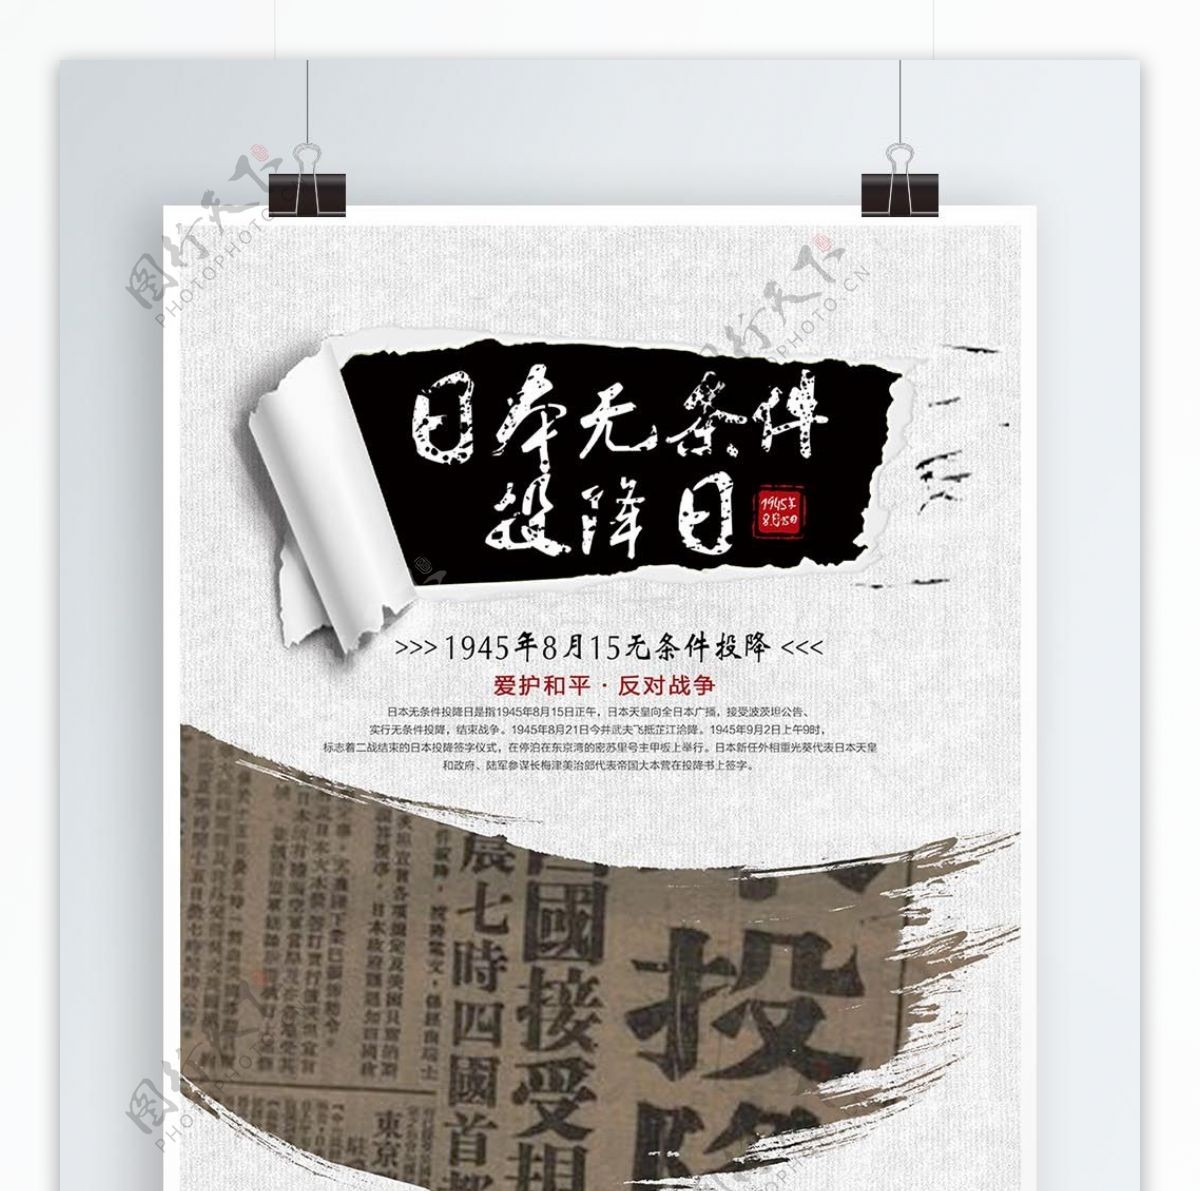 日本无条件投降日公益宣传海报